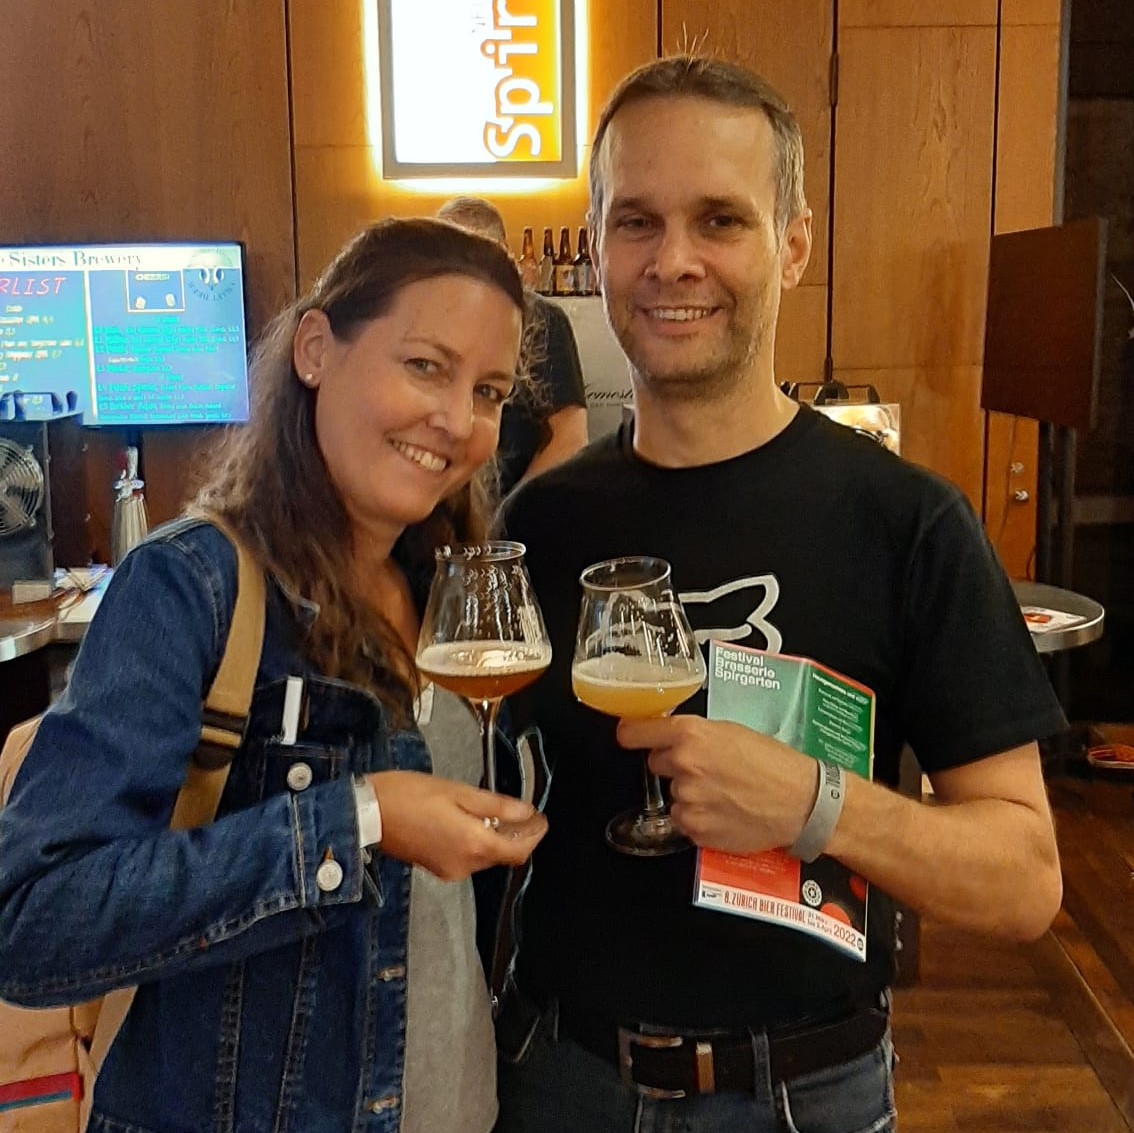 Bierfestival Belgian-Beershop